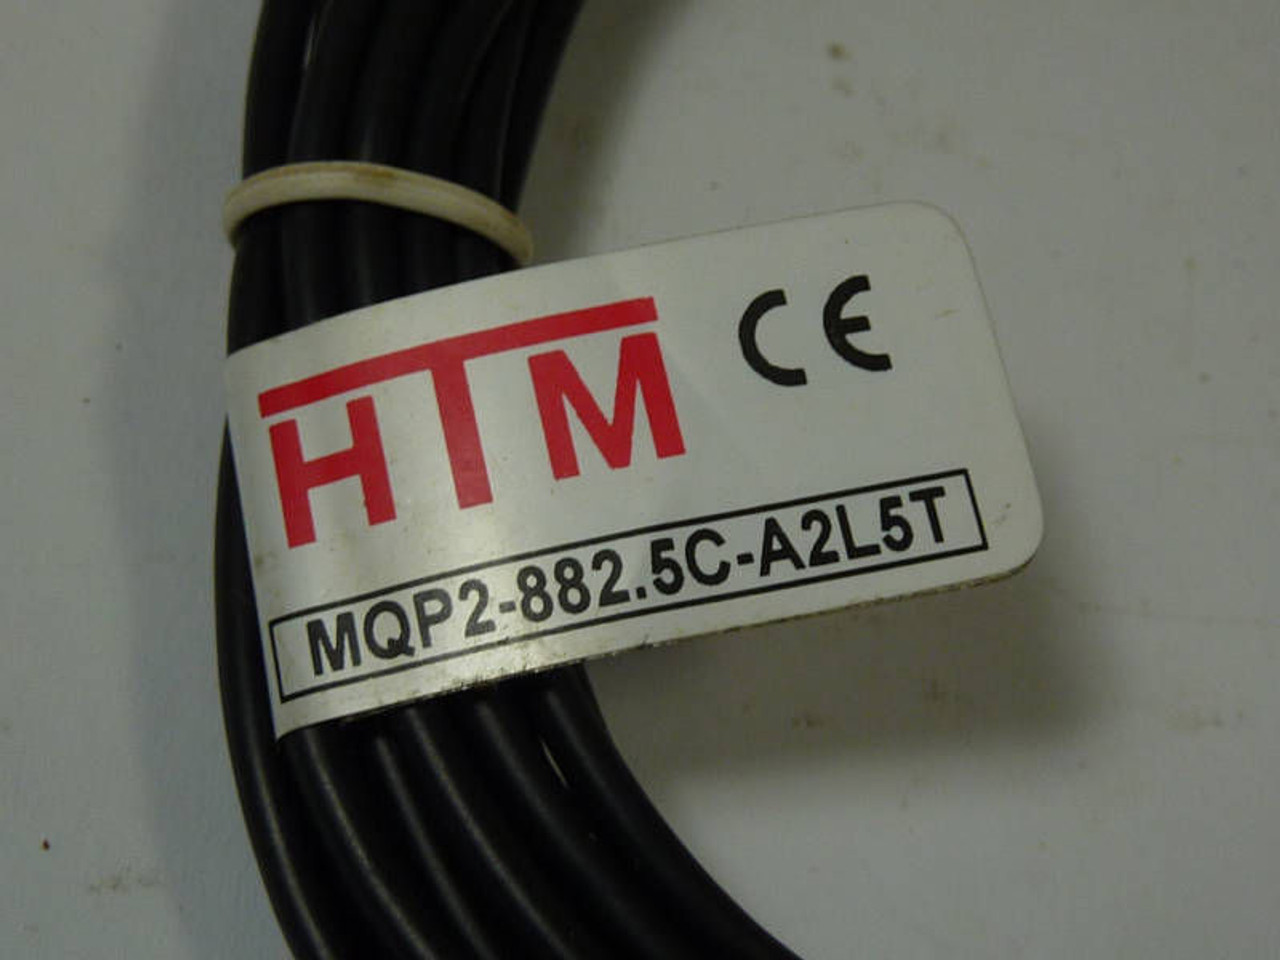 HTM Inductive Proximity Sensor 30VDC MQP2-882.5C-A2L5T ! NOP !